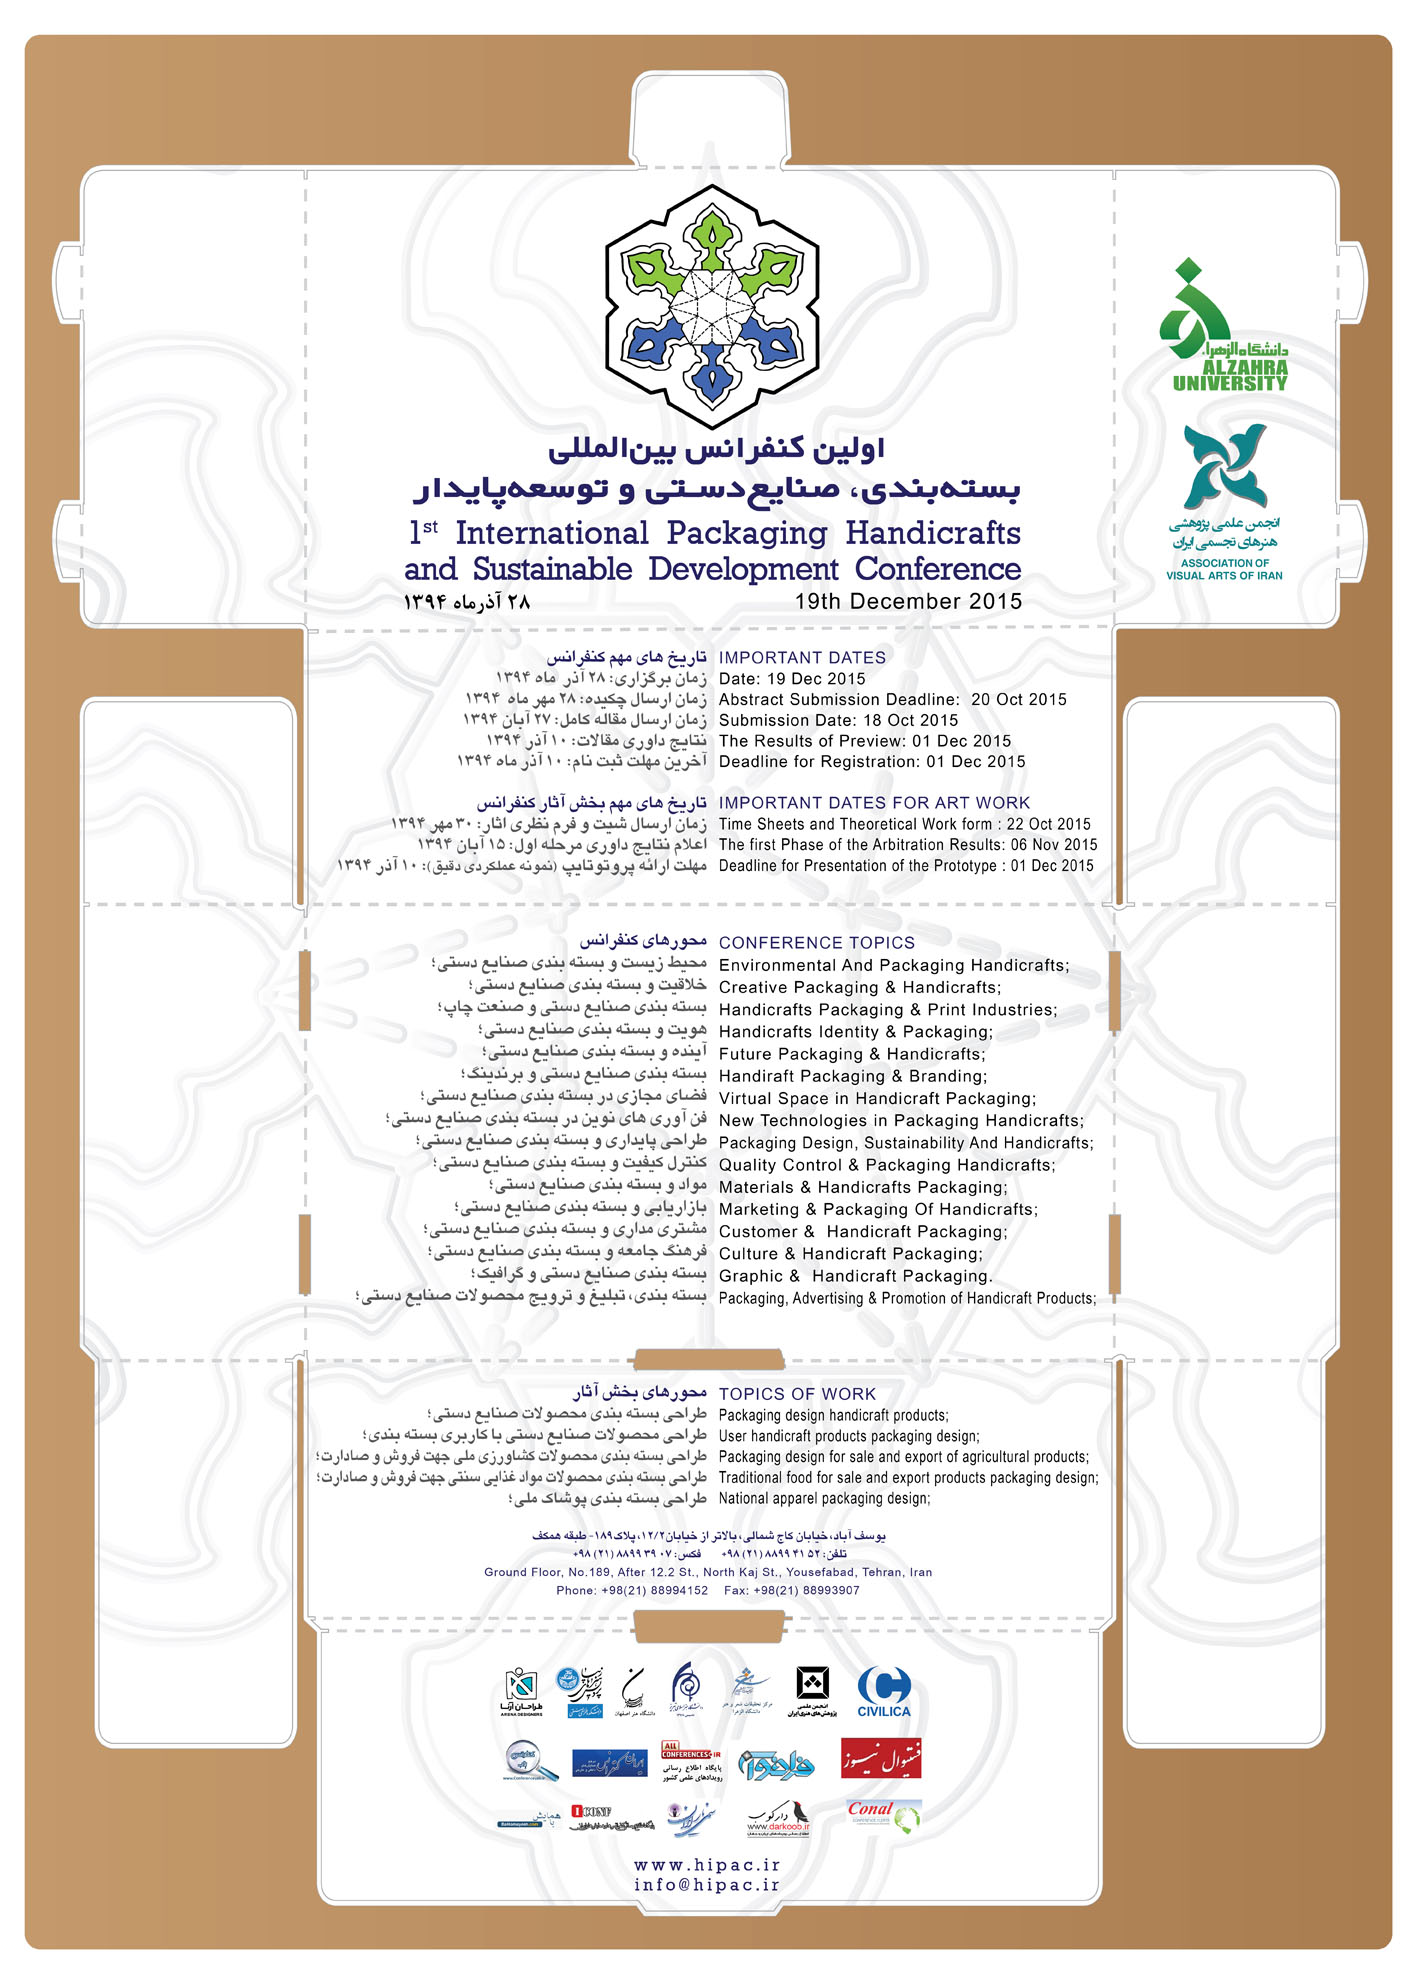 پوستر اولین کنفرانس بین المللی بسته بندی، صنایع دستی، توسعه پایدار